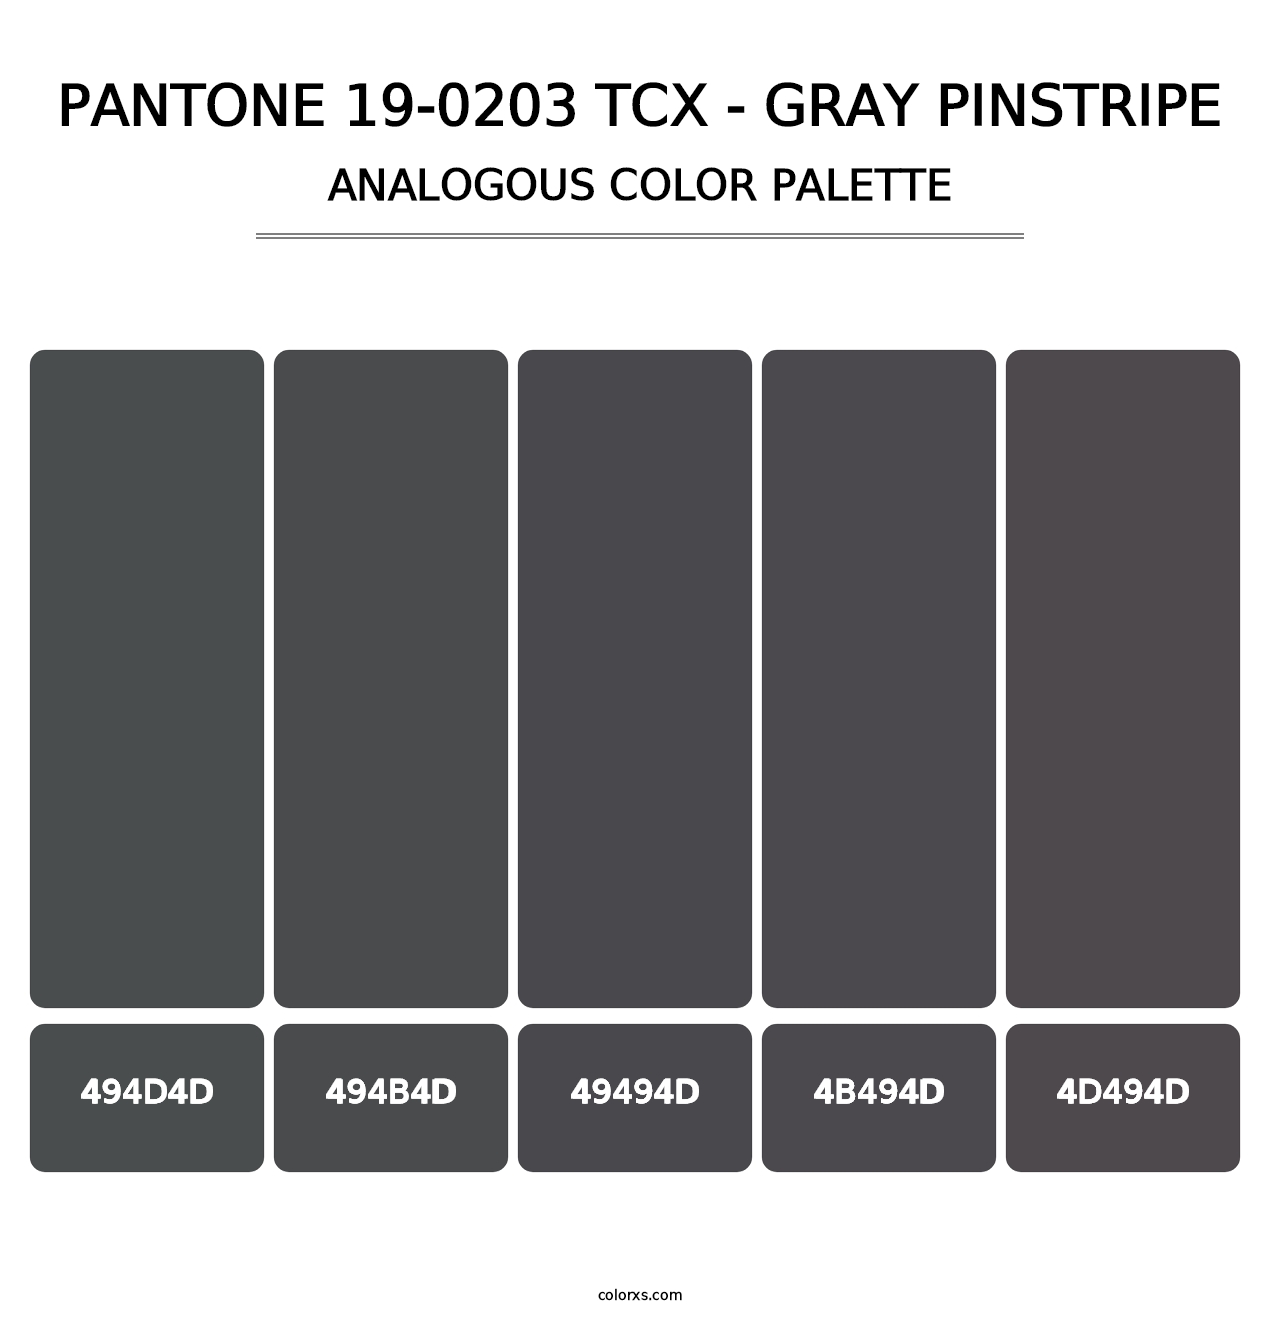 PANTONE 19-0203 TCX - Gray Pinstripe - Analogous Color Palette